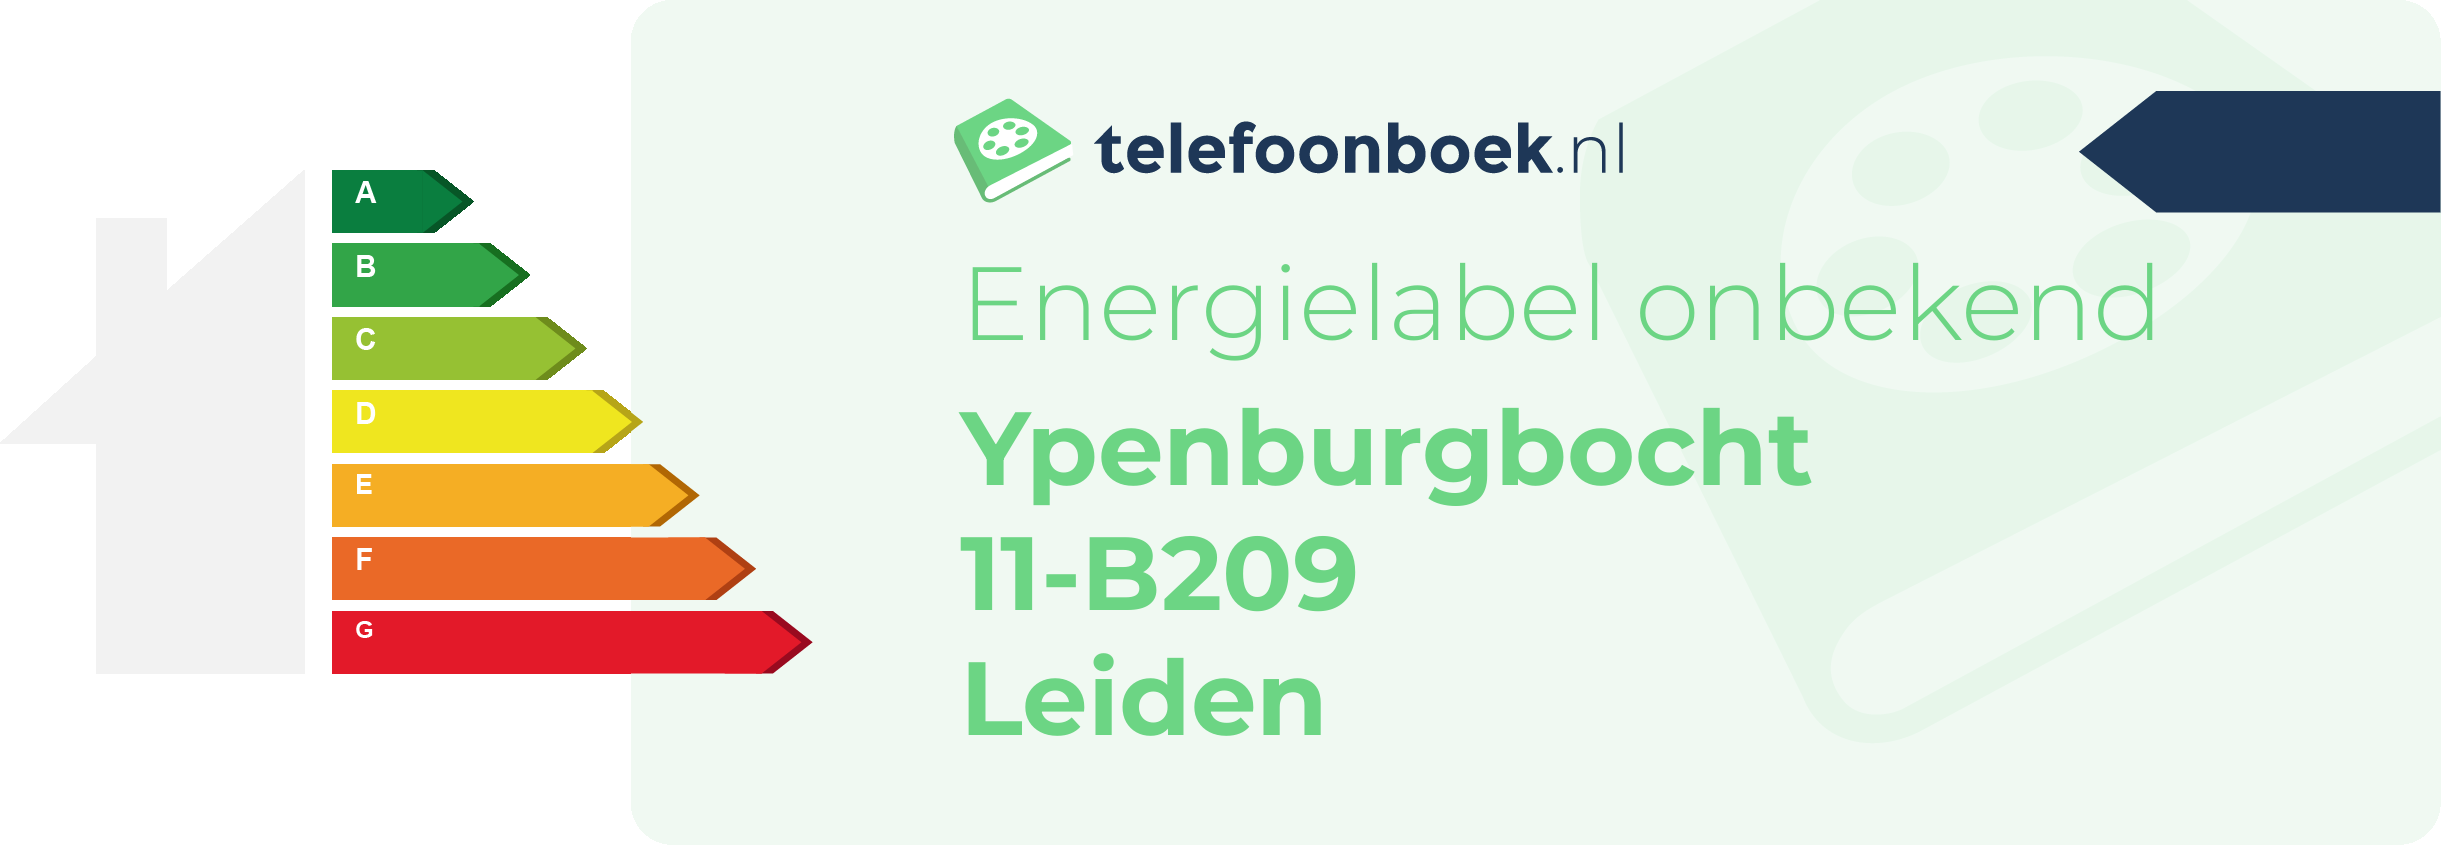 Energielabel Ypenburgbocht 11-B209 Leiden